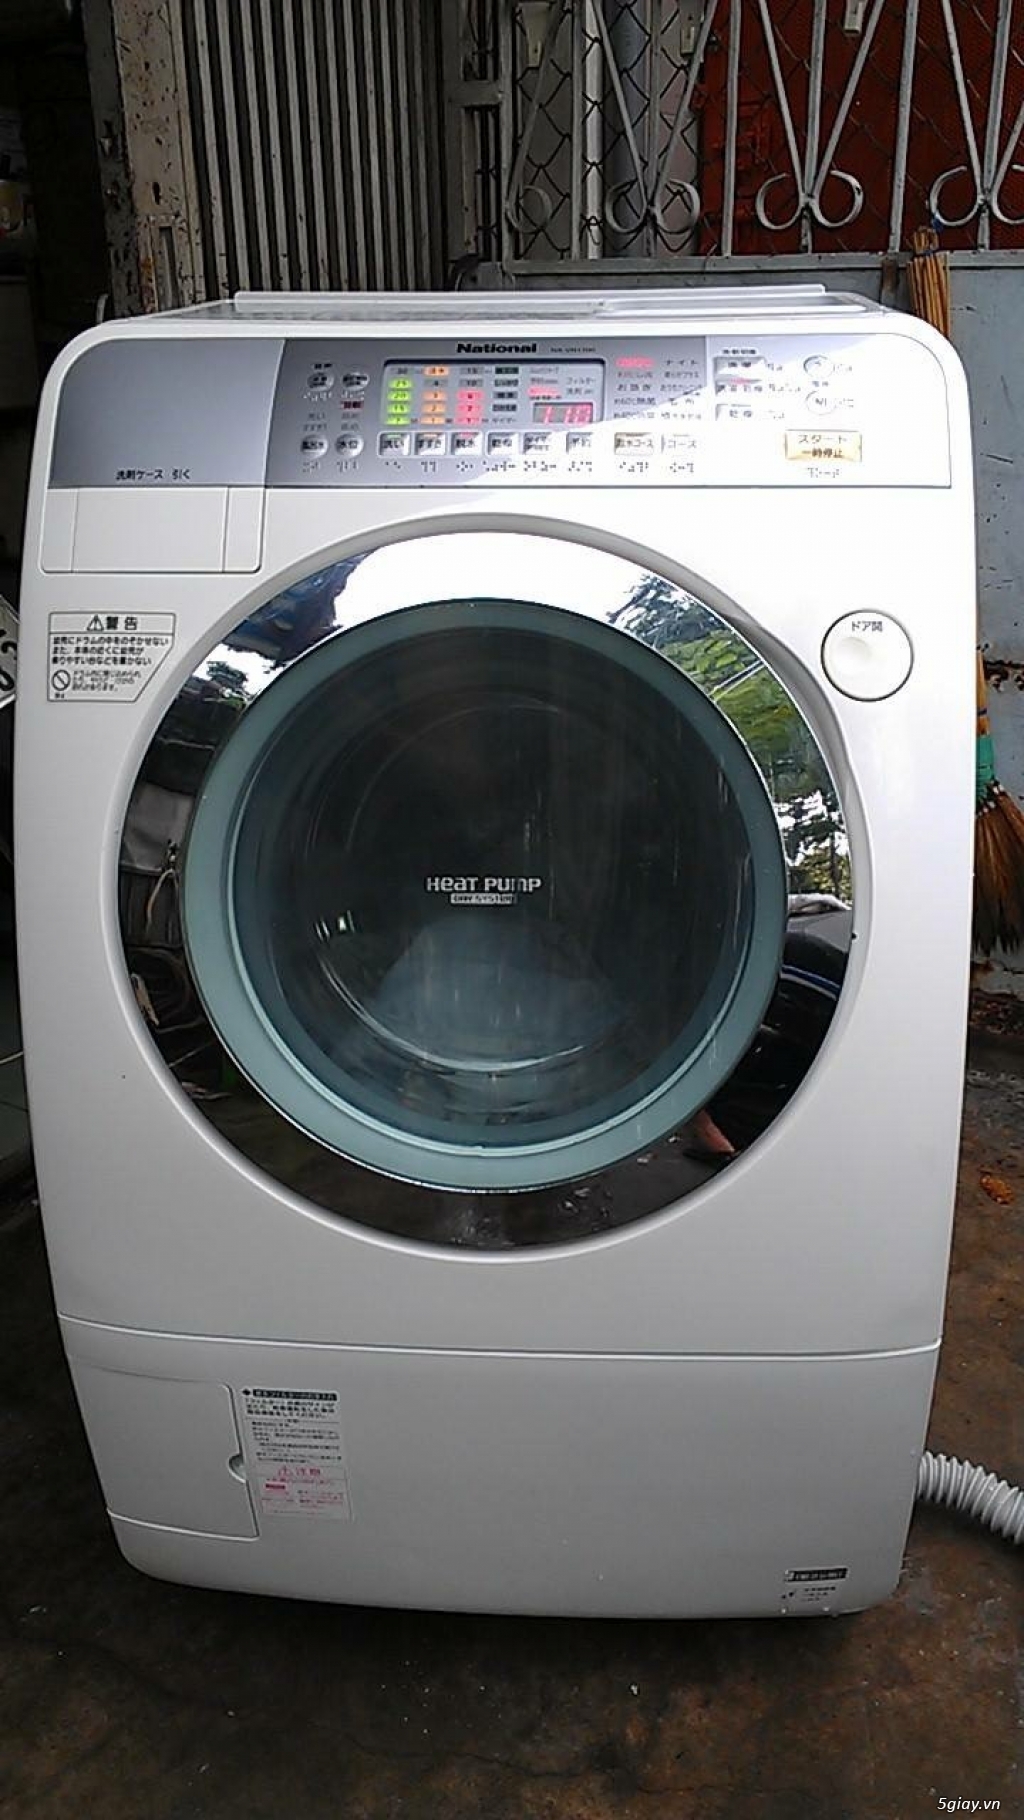 Máy giặt siêu bền lưu kho Nhật Panasonic VR 5600, VR 3600, VR 2200 - 11